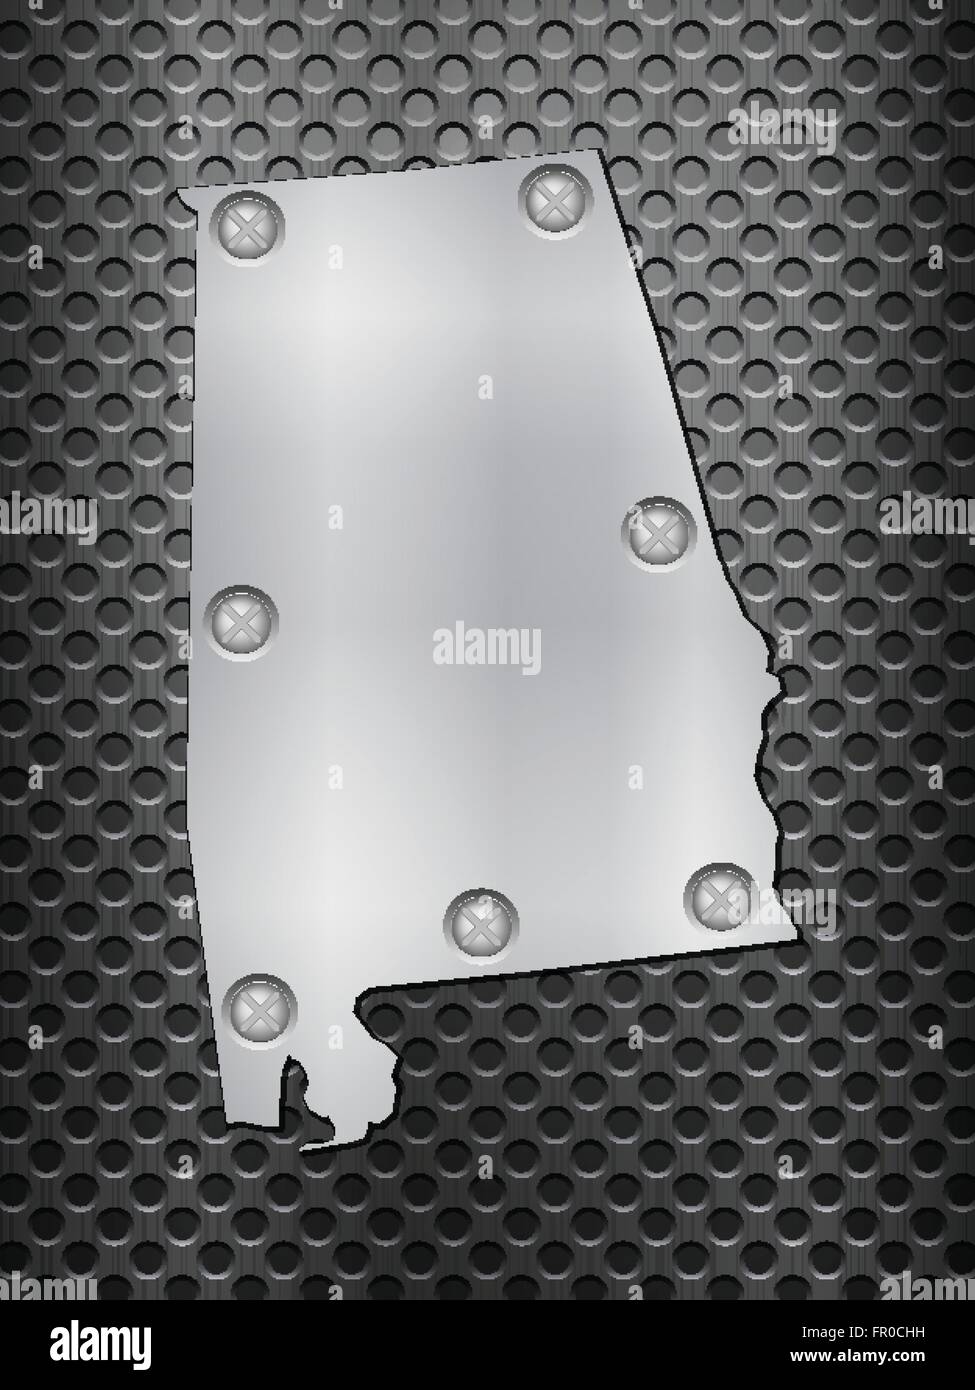 Alabama metal site sur une grille de métal noir. Illustration de Vecteur